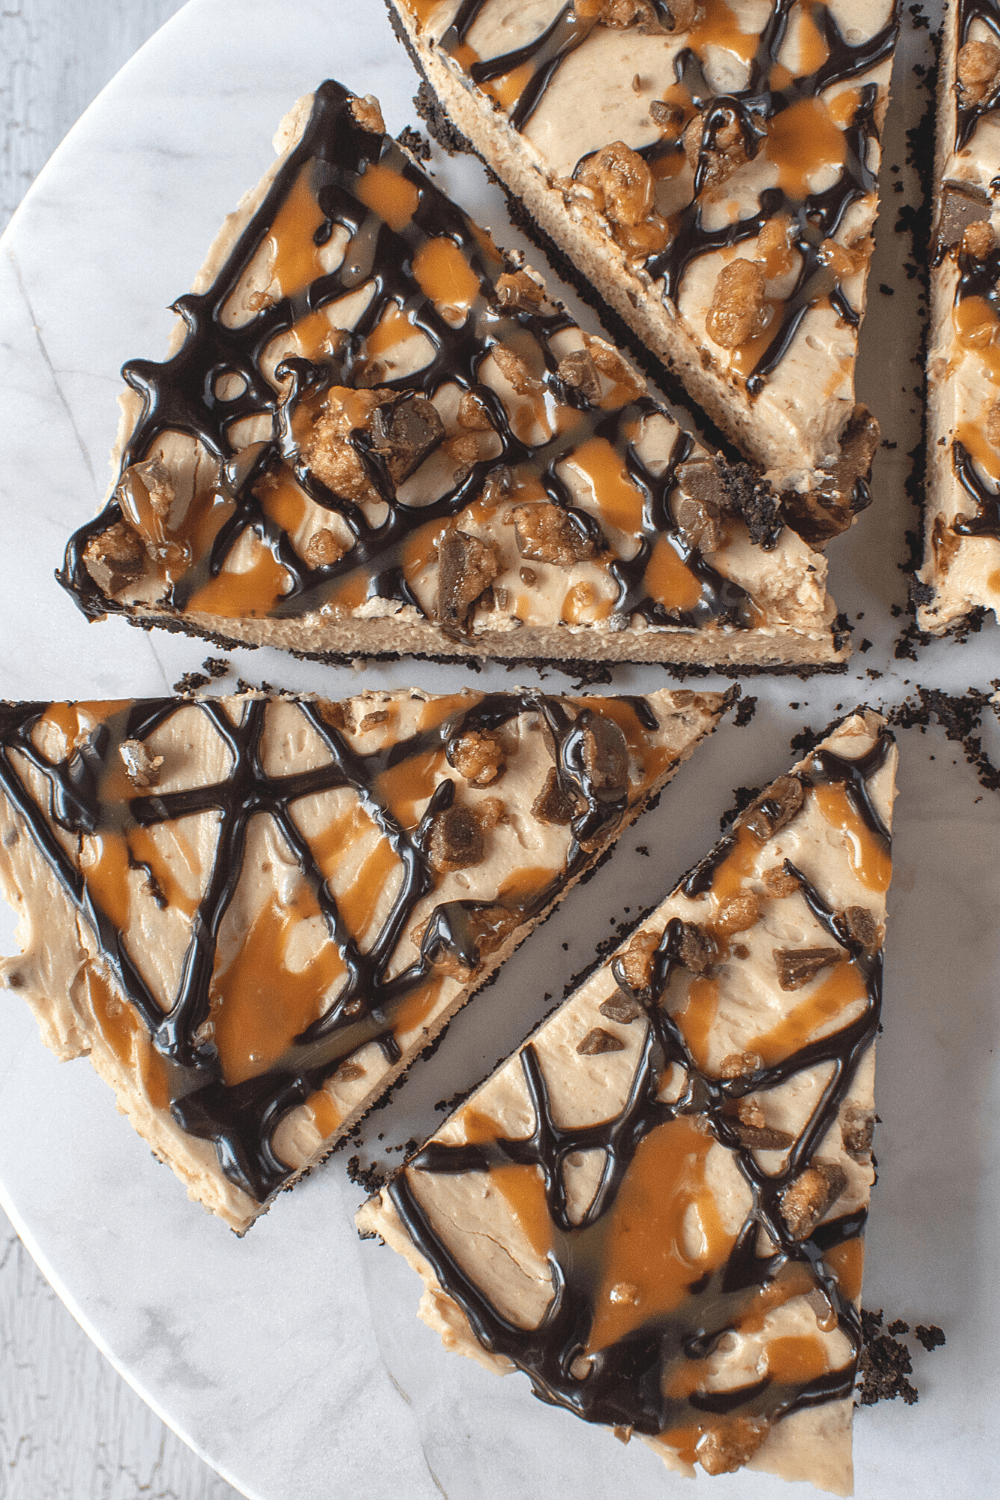 Slices of Homemade Peanut Butter Tart Pie